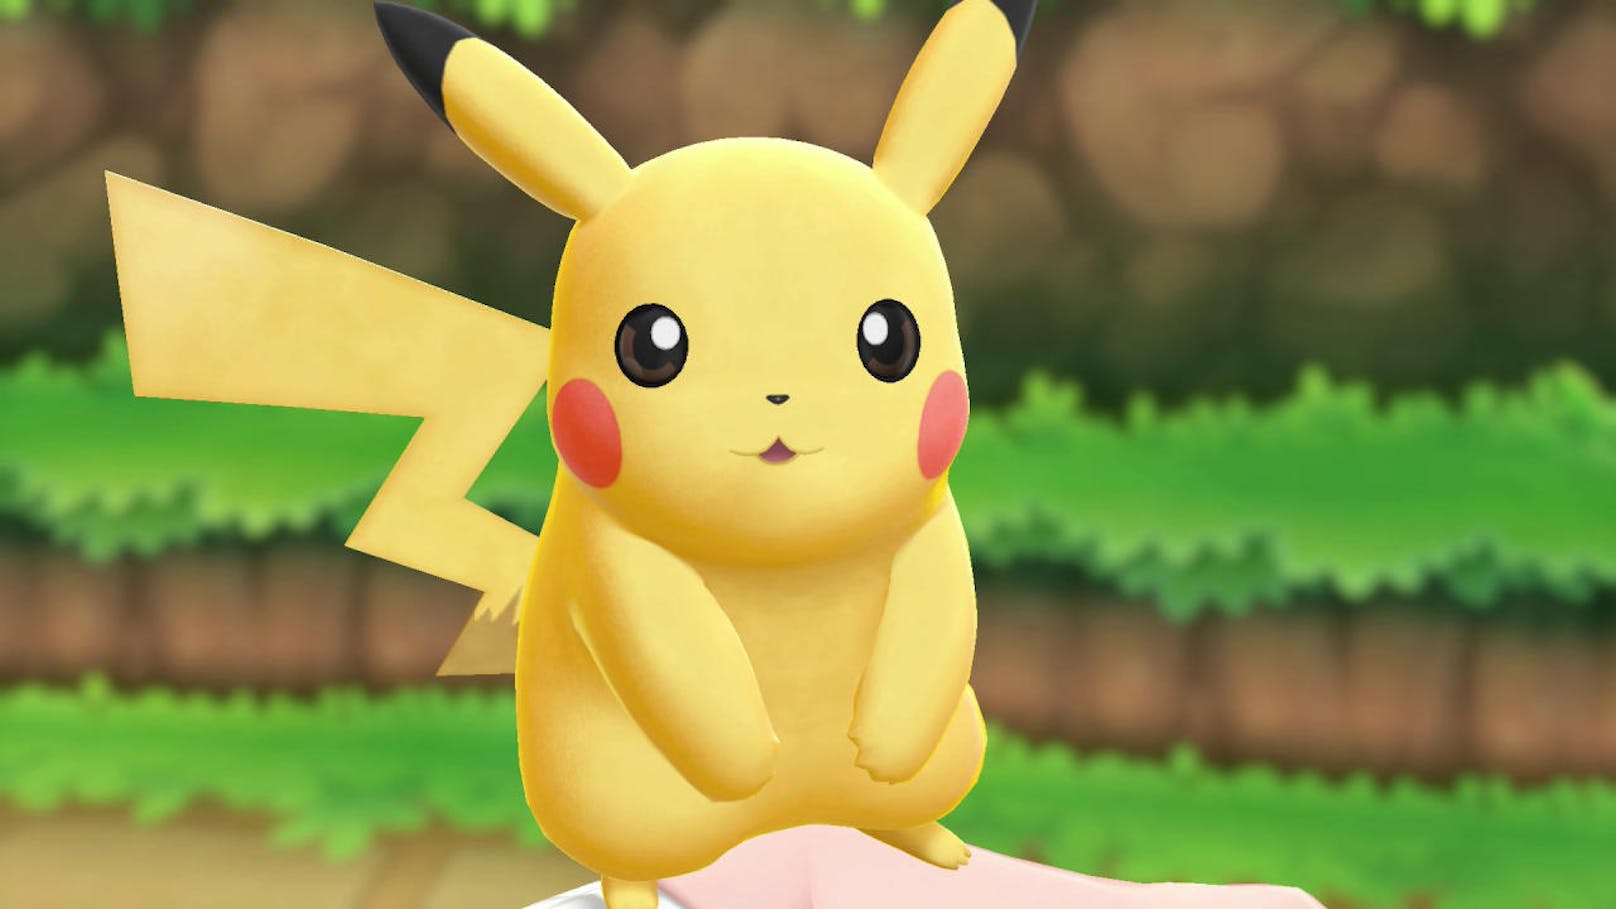  <a href="https://www.heute.at/digital/games/story/Pokemon-Lets-Go-Pikachu-Evoli-Test-Review-Nintendo-Switch-jetzt-richtig-einsteigerfreundlich-45978395" target="_blank">Pokémon Lets Go Pikachu und Evoli</a>